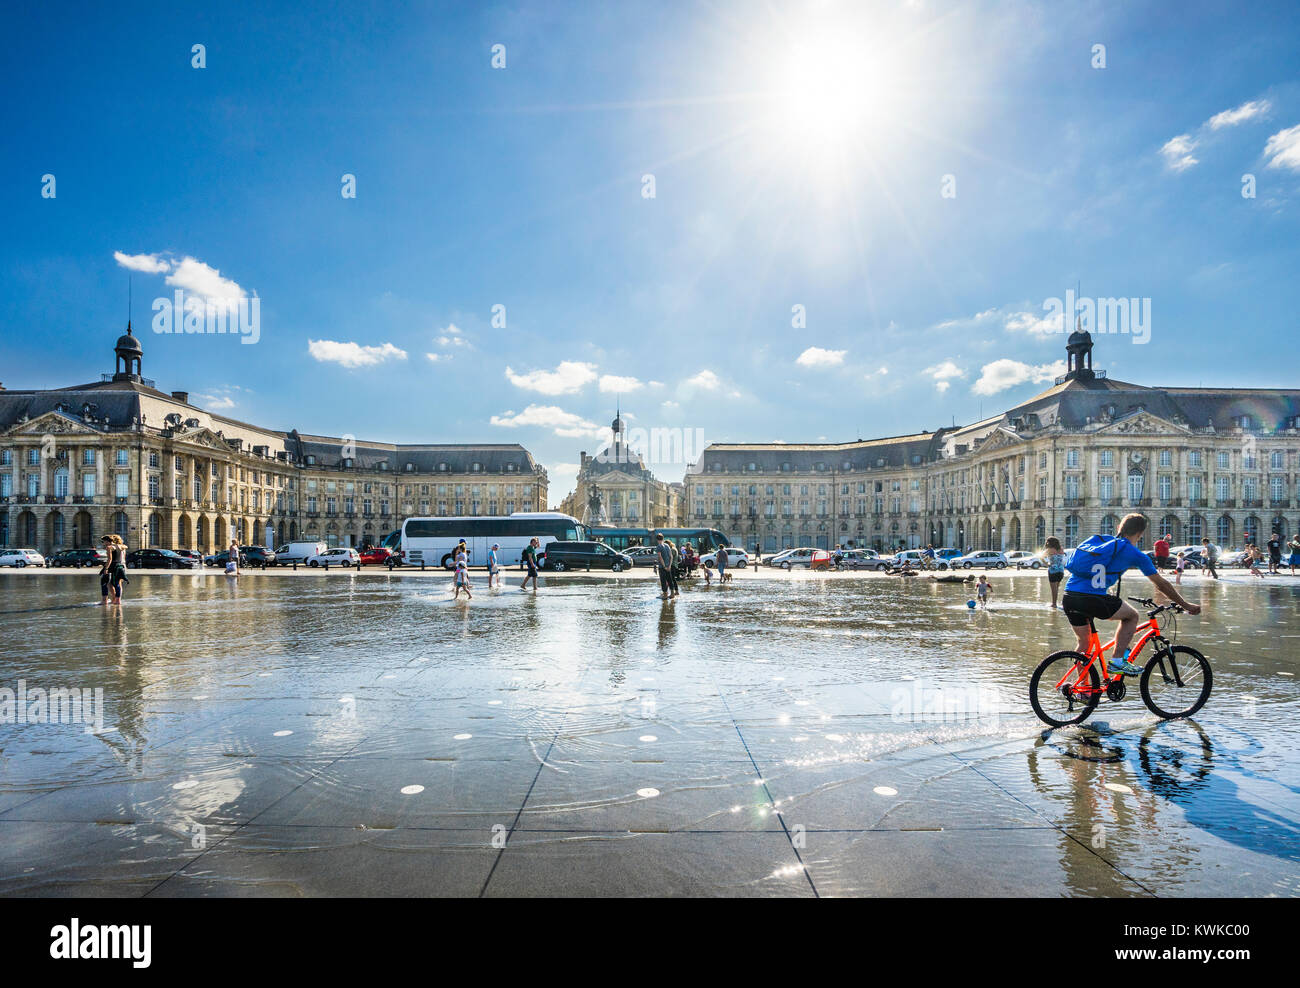 Frankreich, Gironde, Bordeaux, Miroir d'eau Reflecting Pool auf dem Place de la Bourse Stockfoto